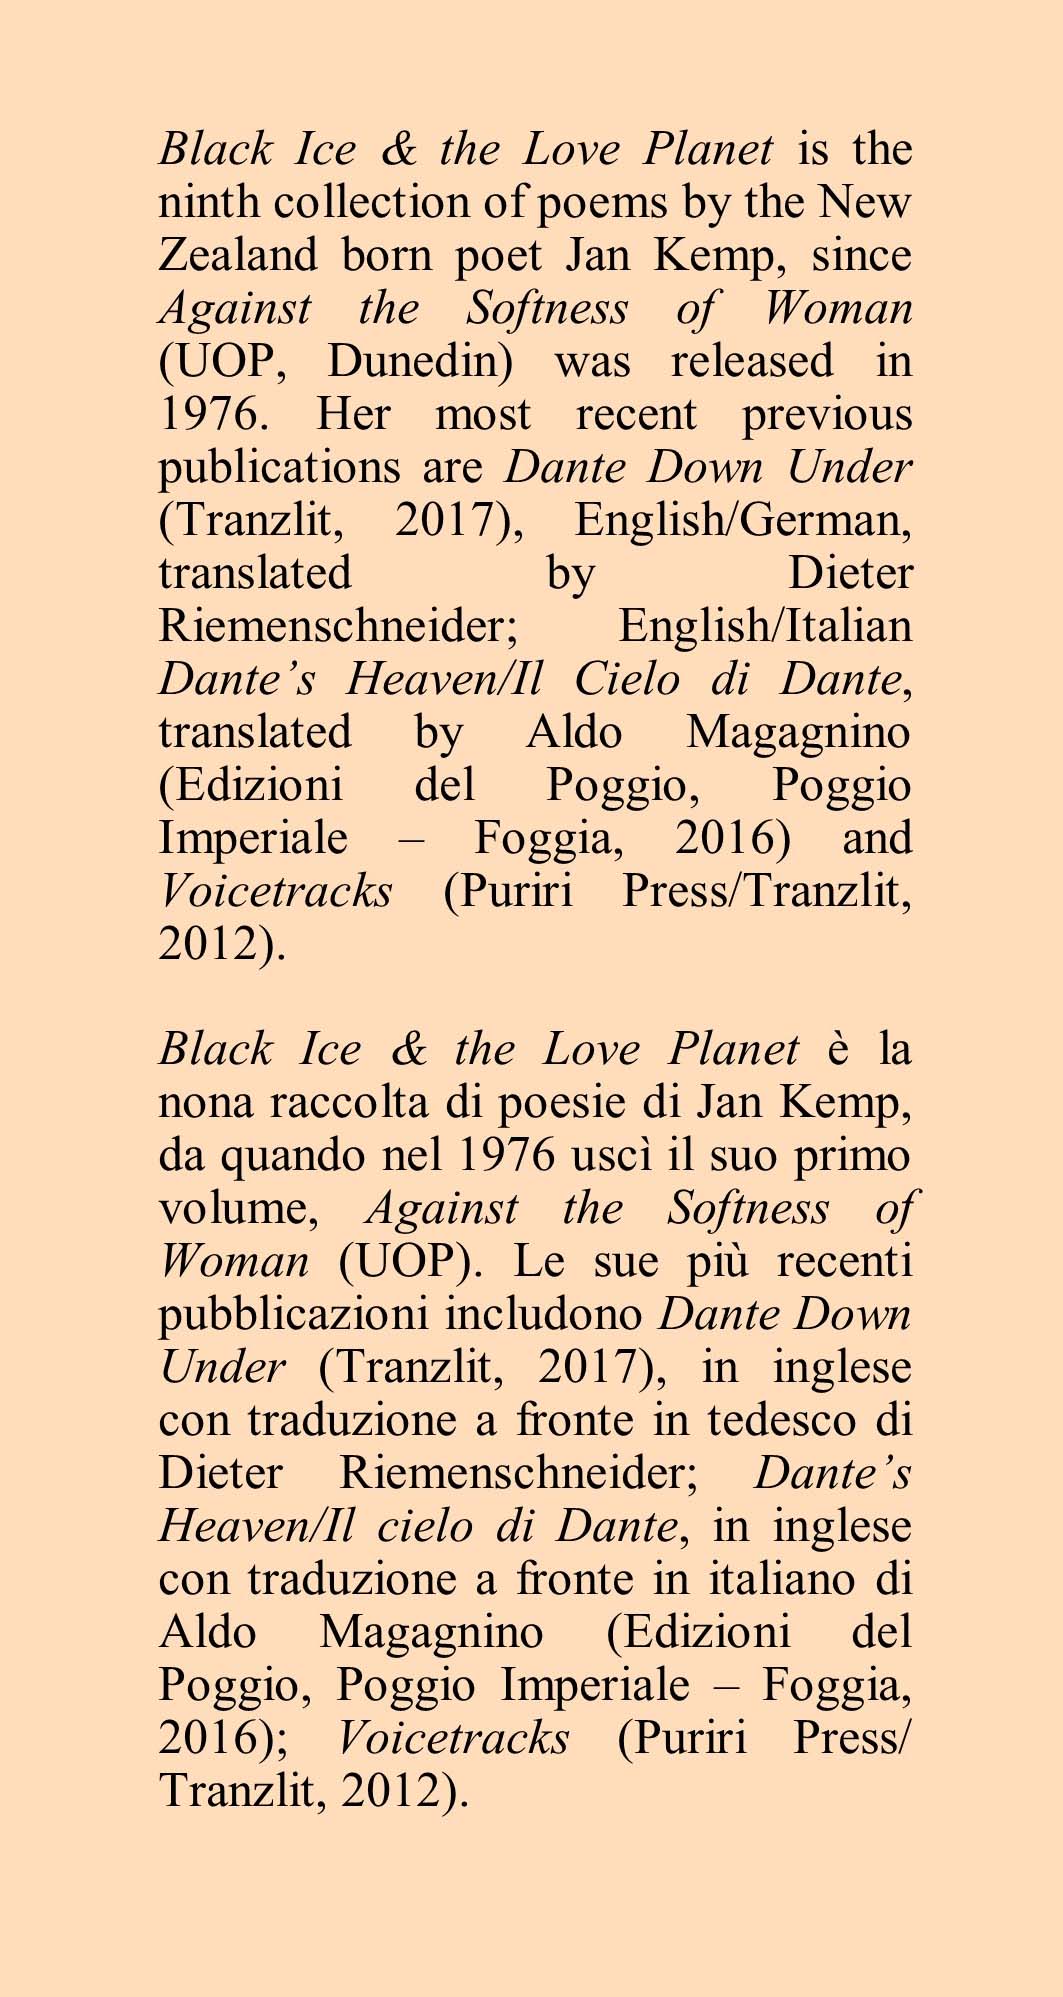 Black Ice & the Love Planet - Ghiaccio Nero & il Pianeta dell’Amore